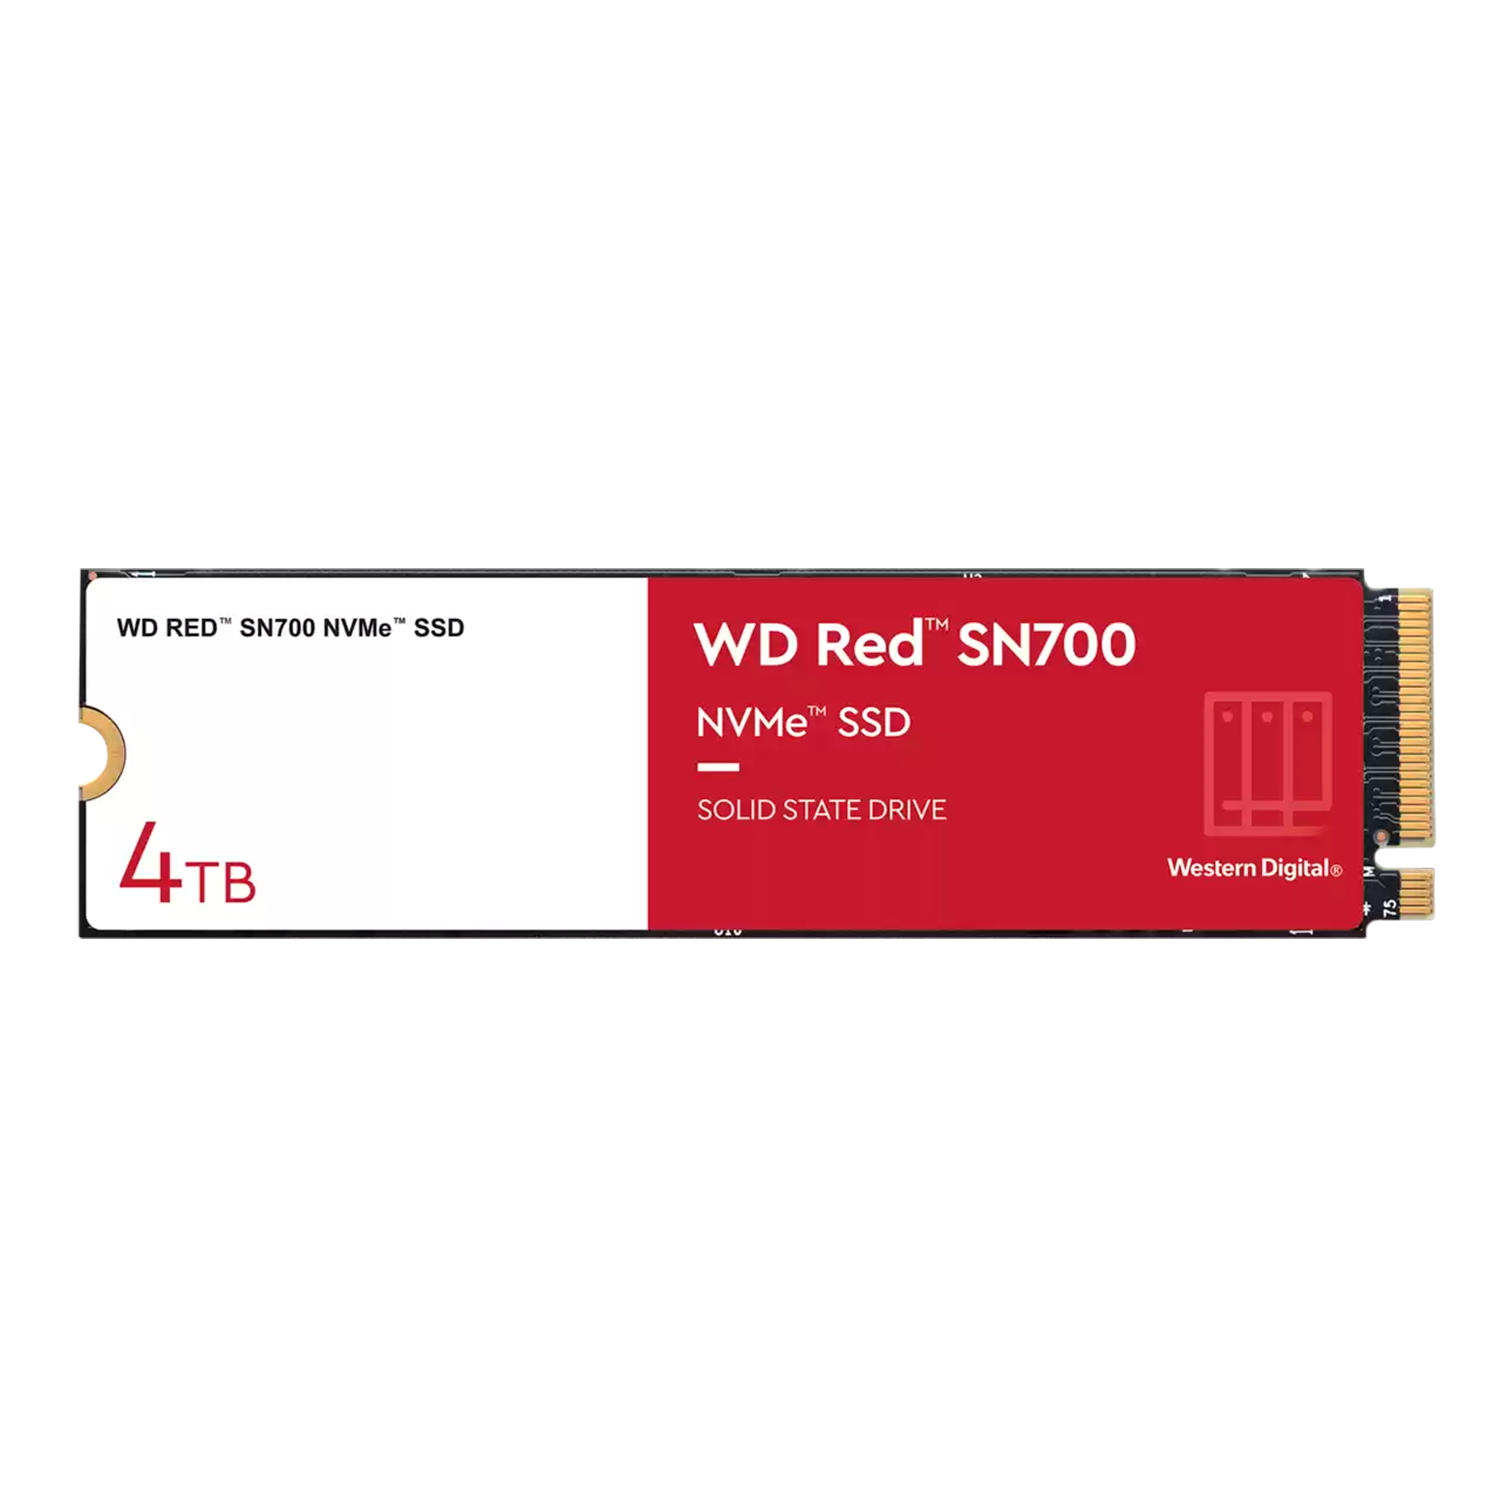 SSD M.2 Western Digital SN700 Red 4TB NVME Gen 3 - WDS400T1R0C
